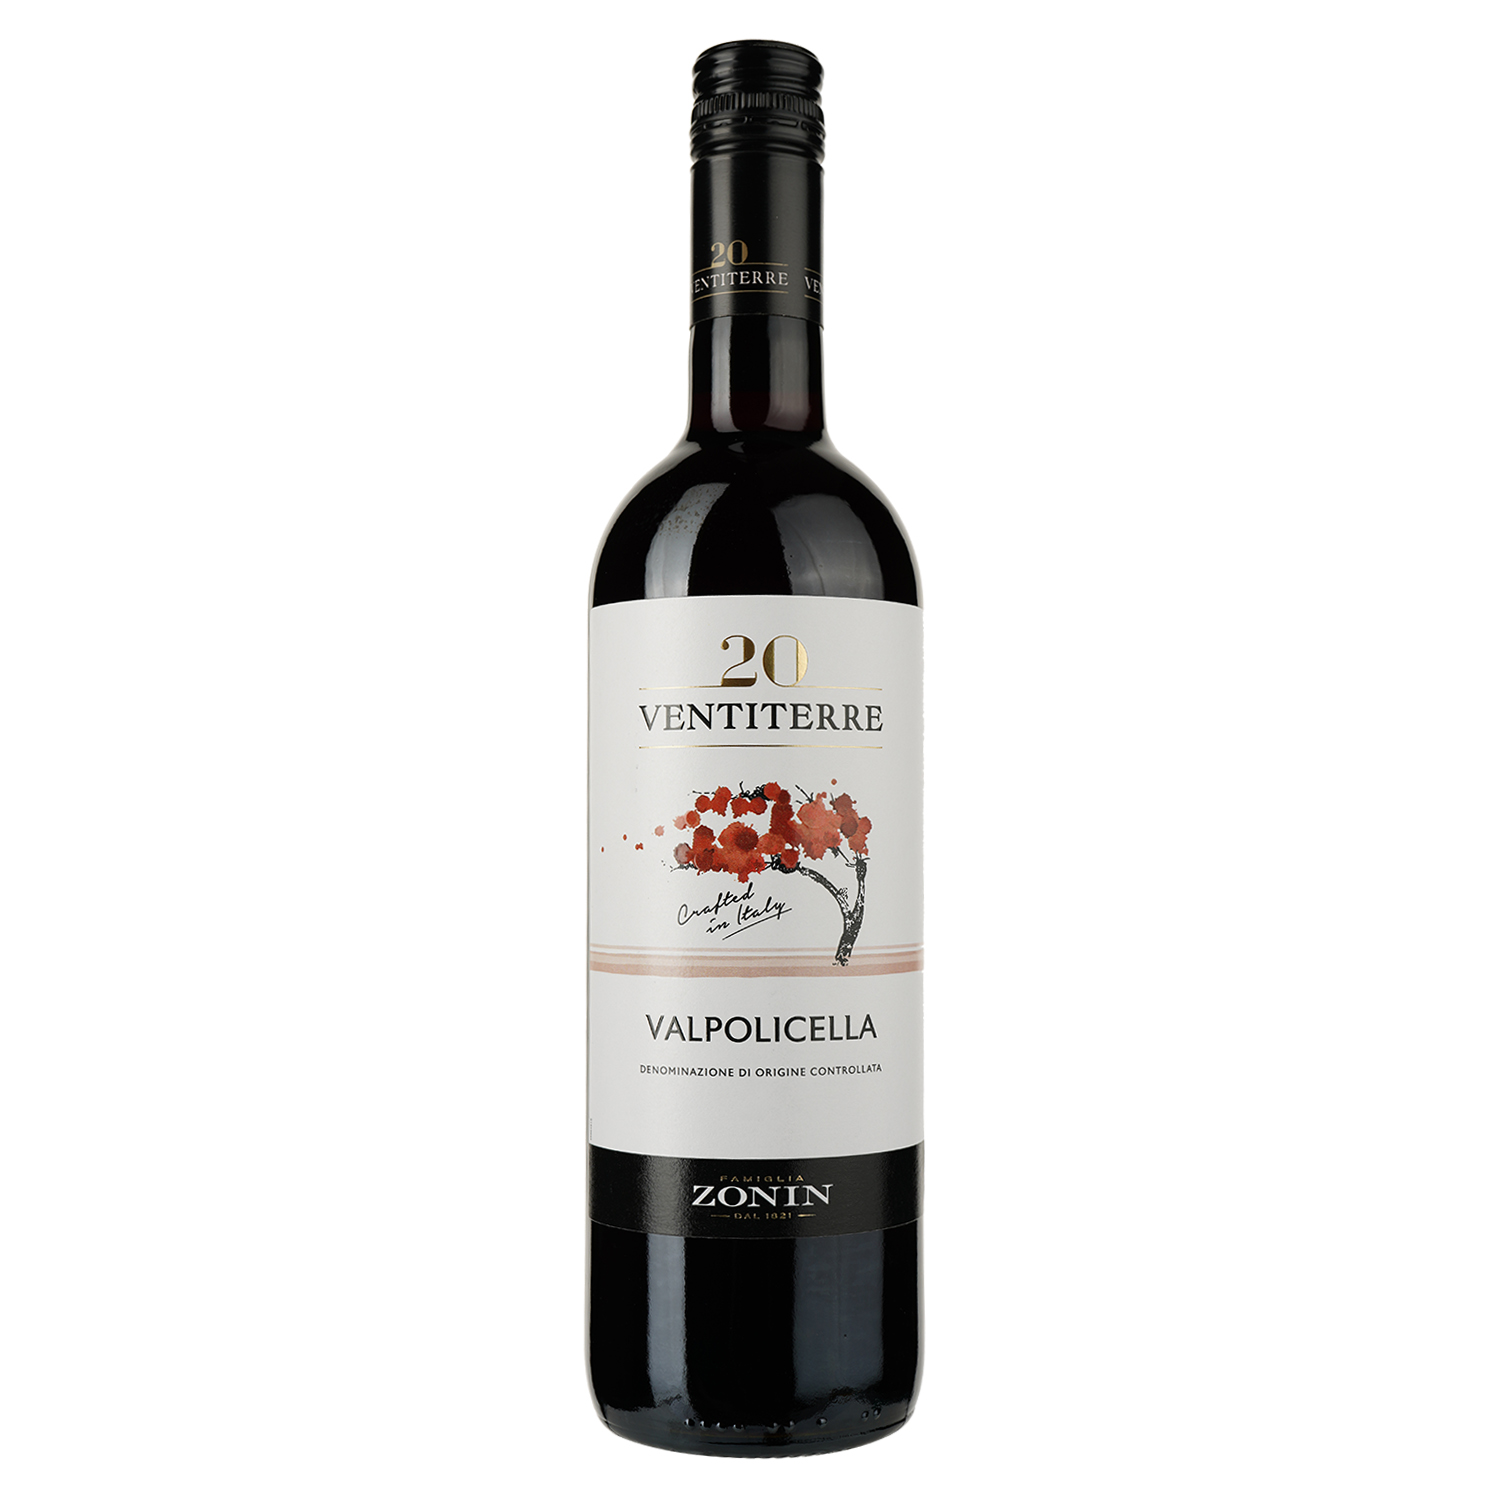 Вино Zonin Valpolicella 20 Ventiterre, красное, сухое, 0,75 л - фото 1